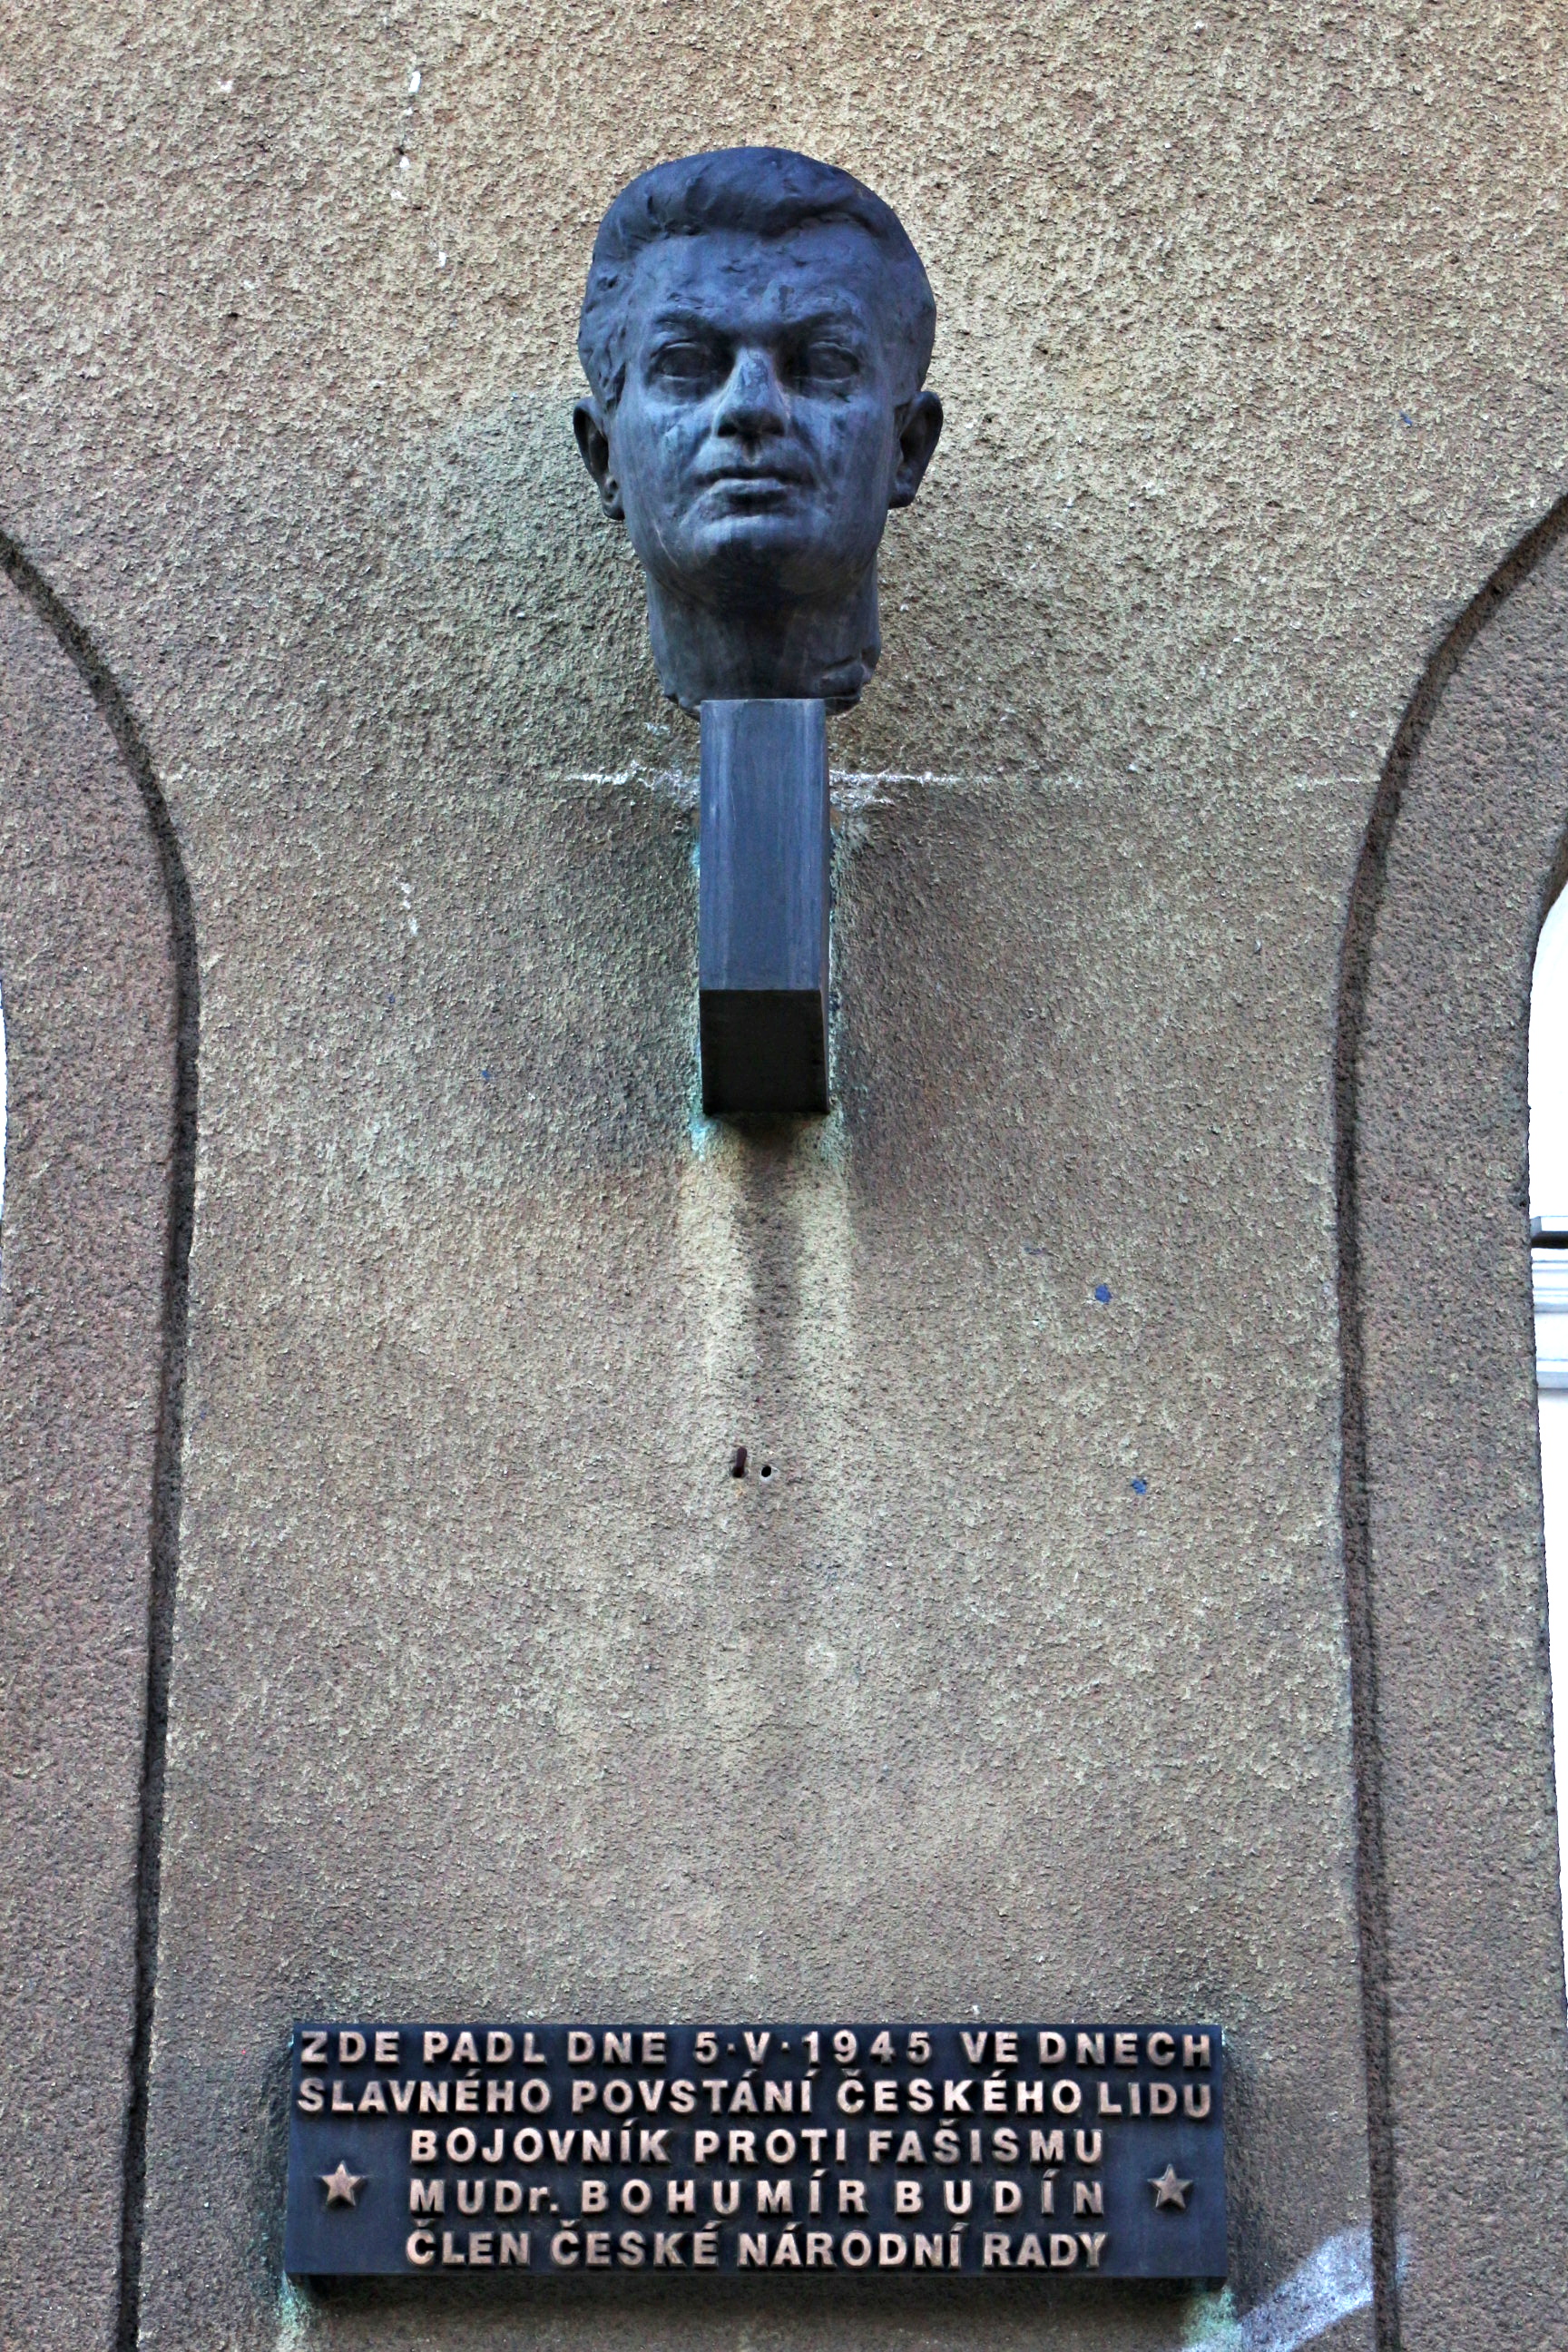 Pamětní deska na domě v Bělehradské ulici v Praze, kde Bohumír Budín padl